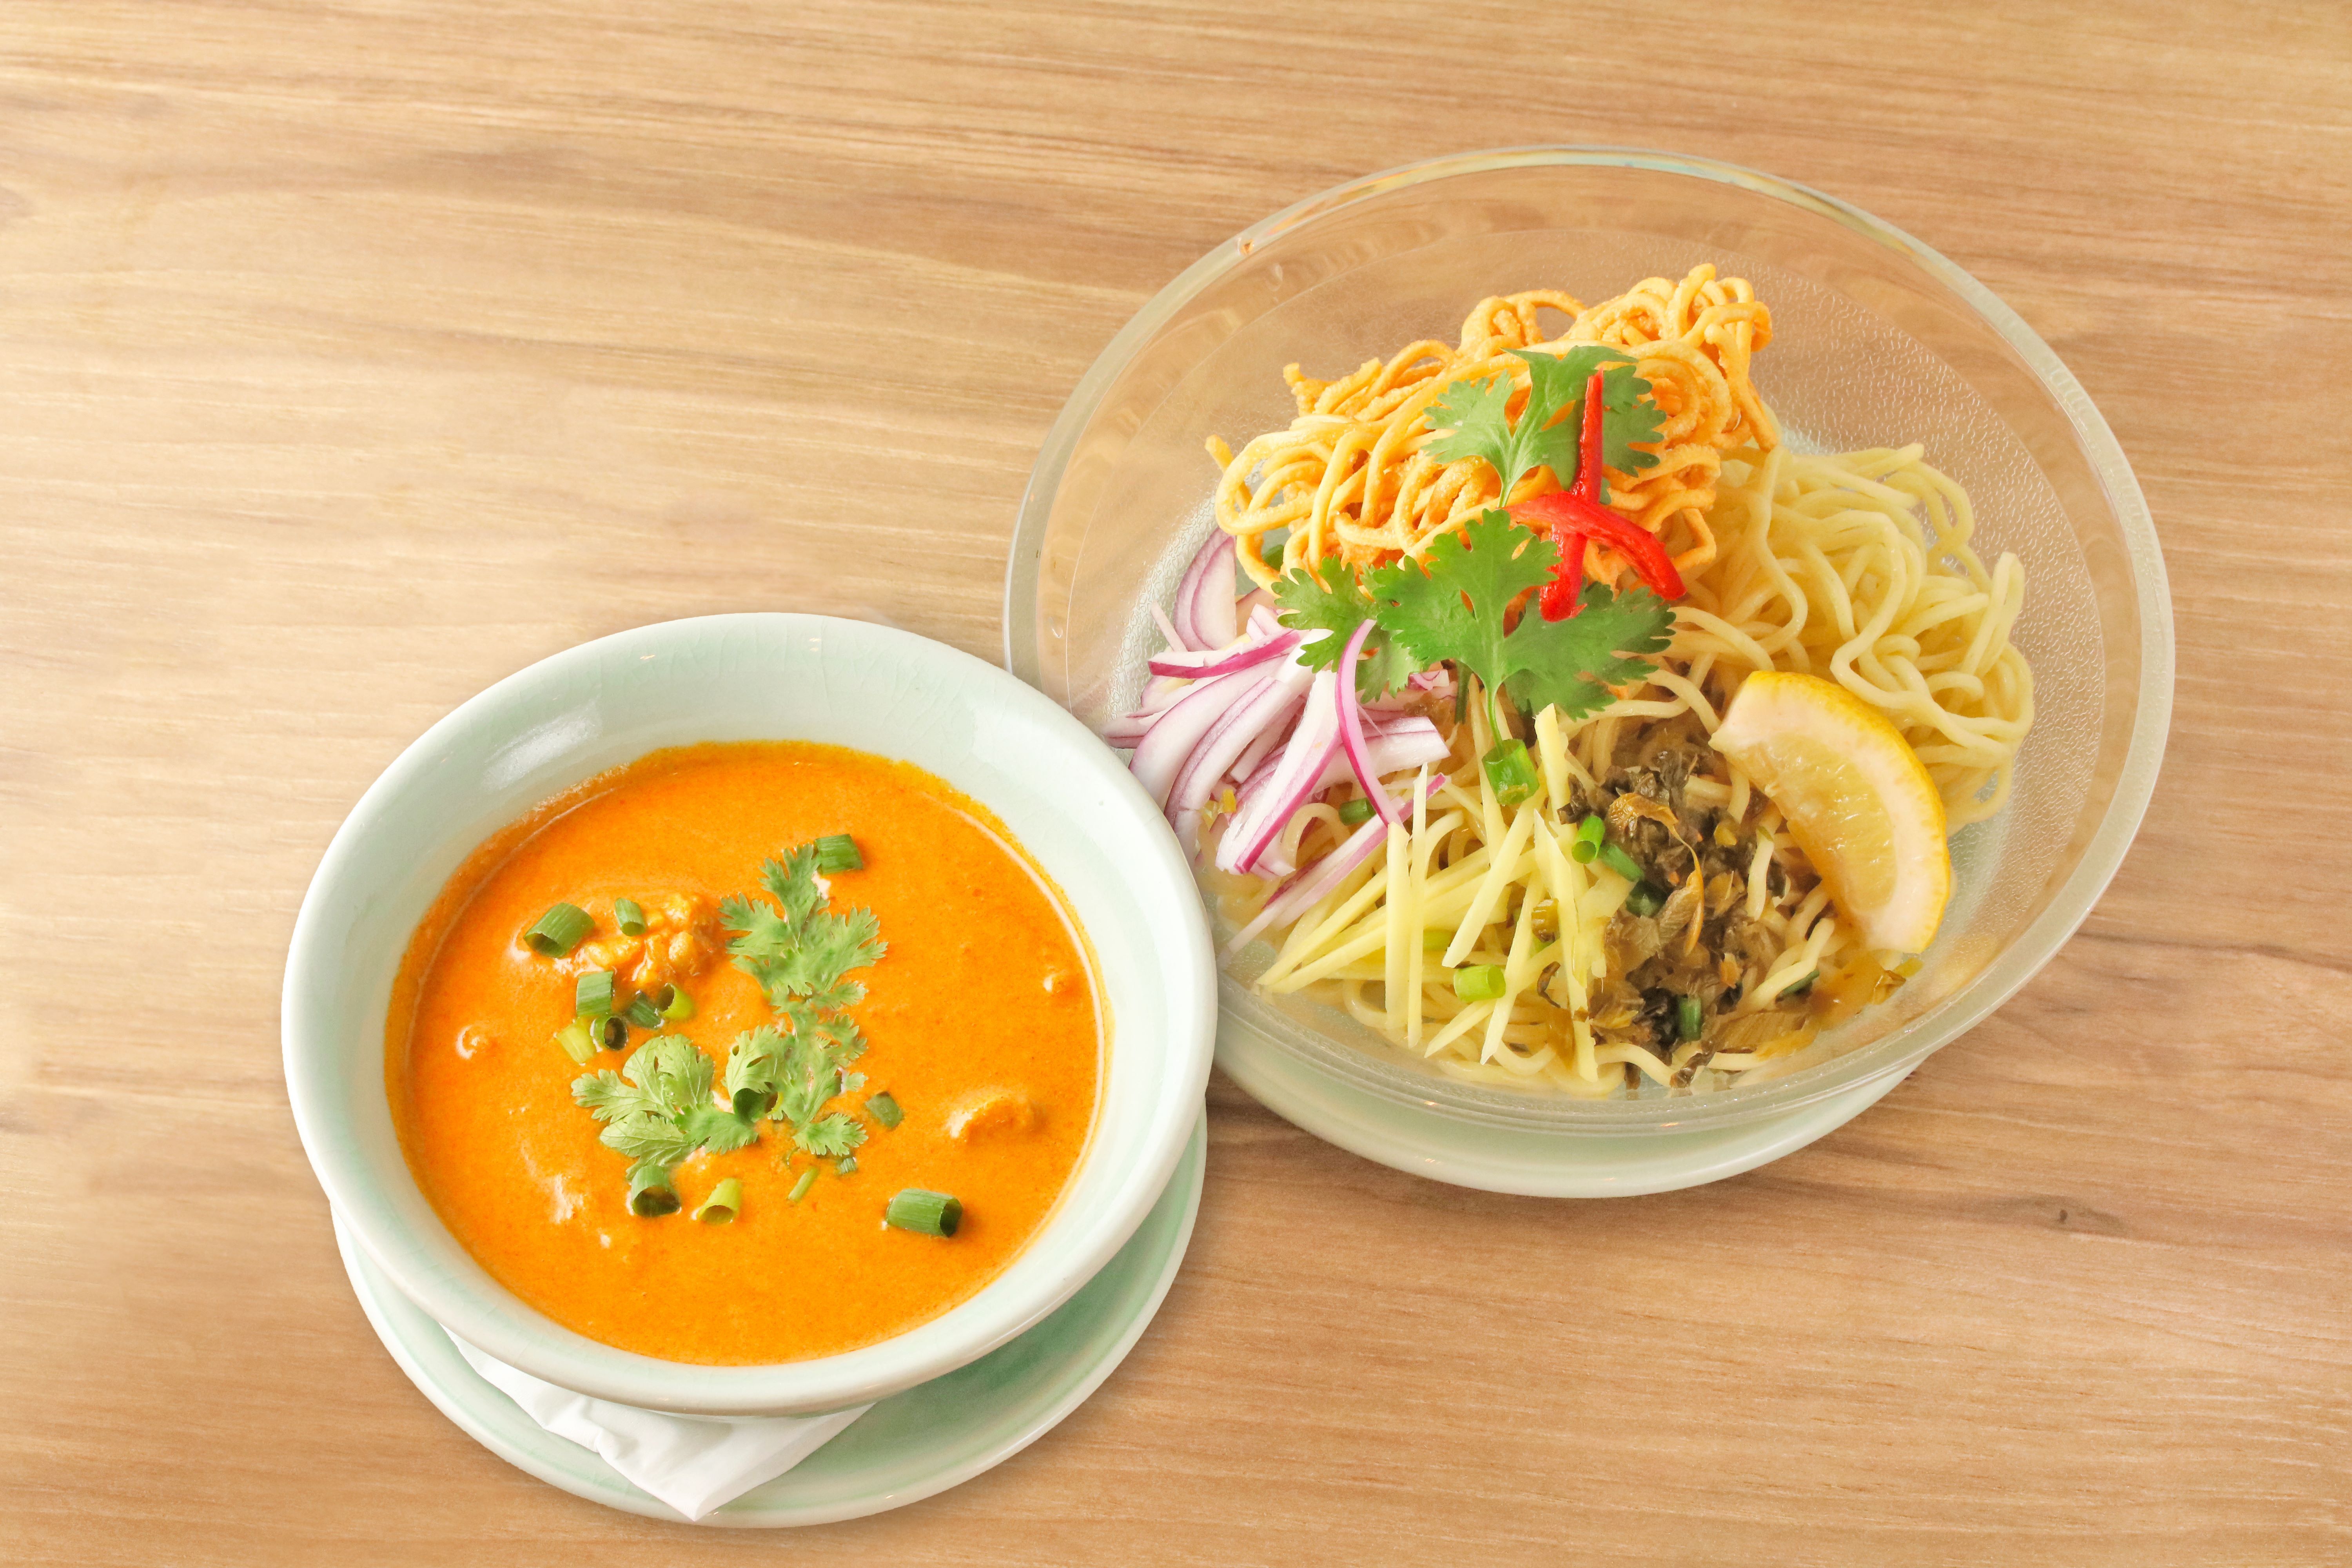 本格タイ料理店「クルン・サイアム」にて、夏限定の
オリジナルメニュー「つけ麺カオソイ」が8/1に販売開始